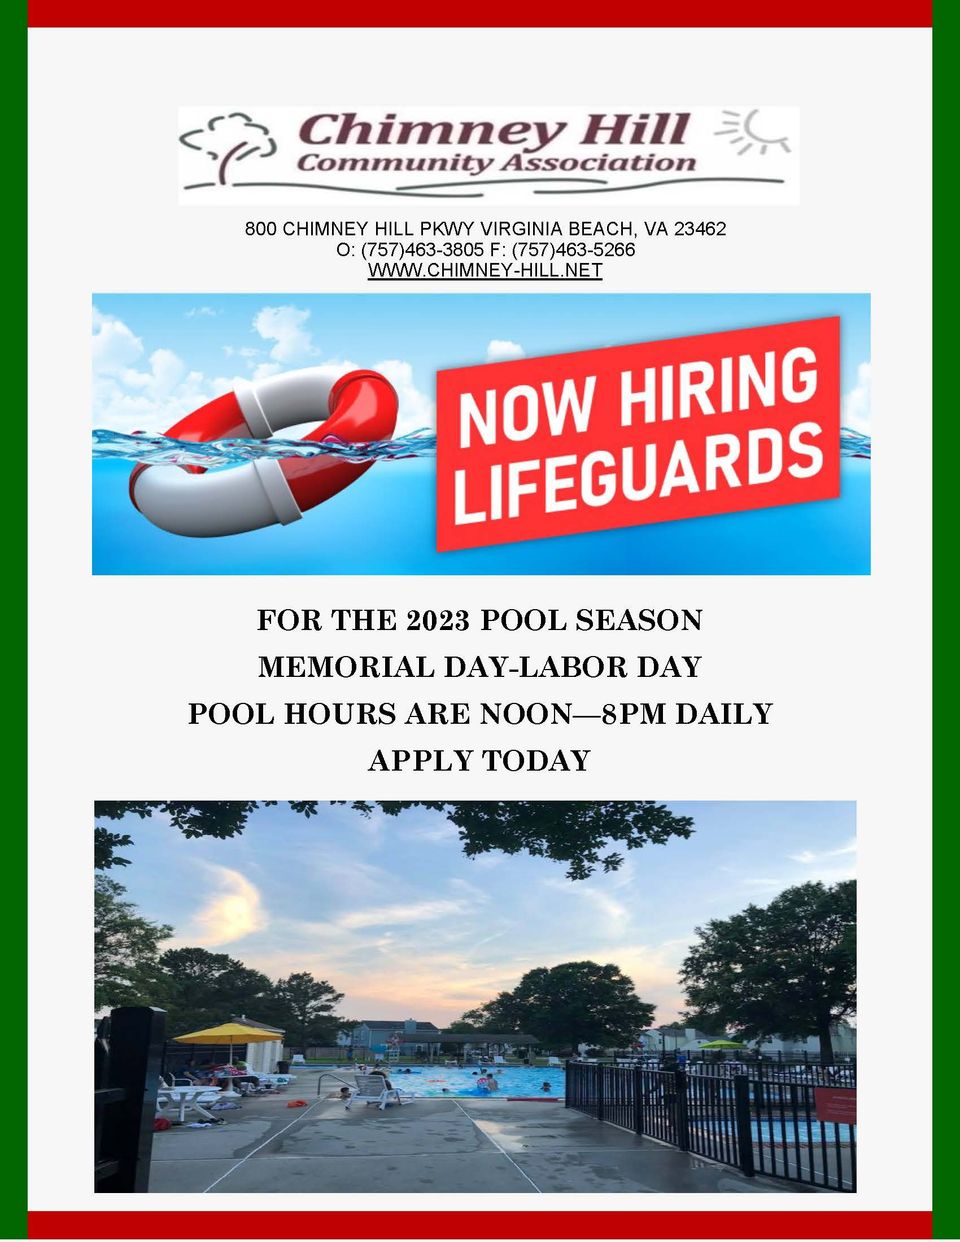 Now hiring lifeguards flyer 